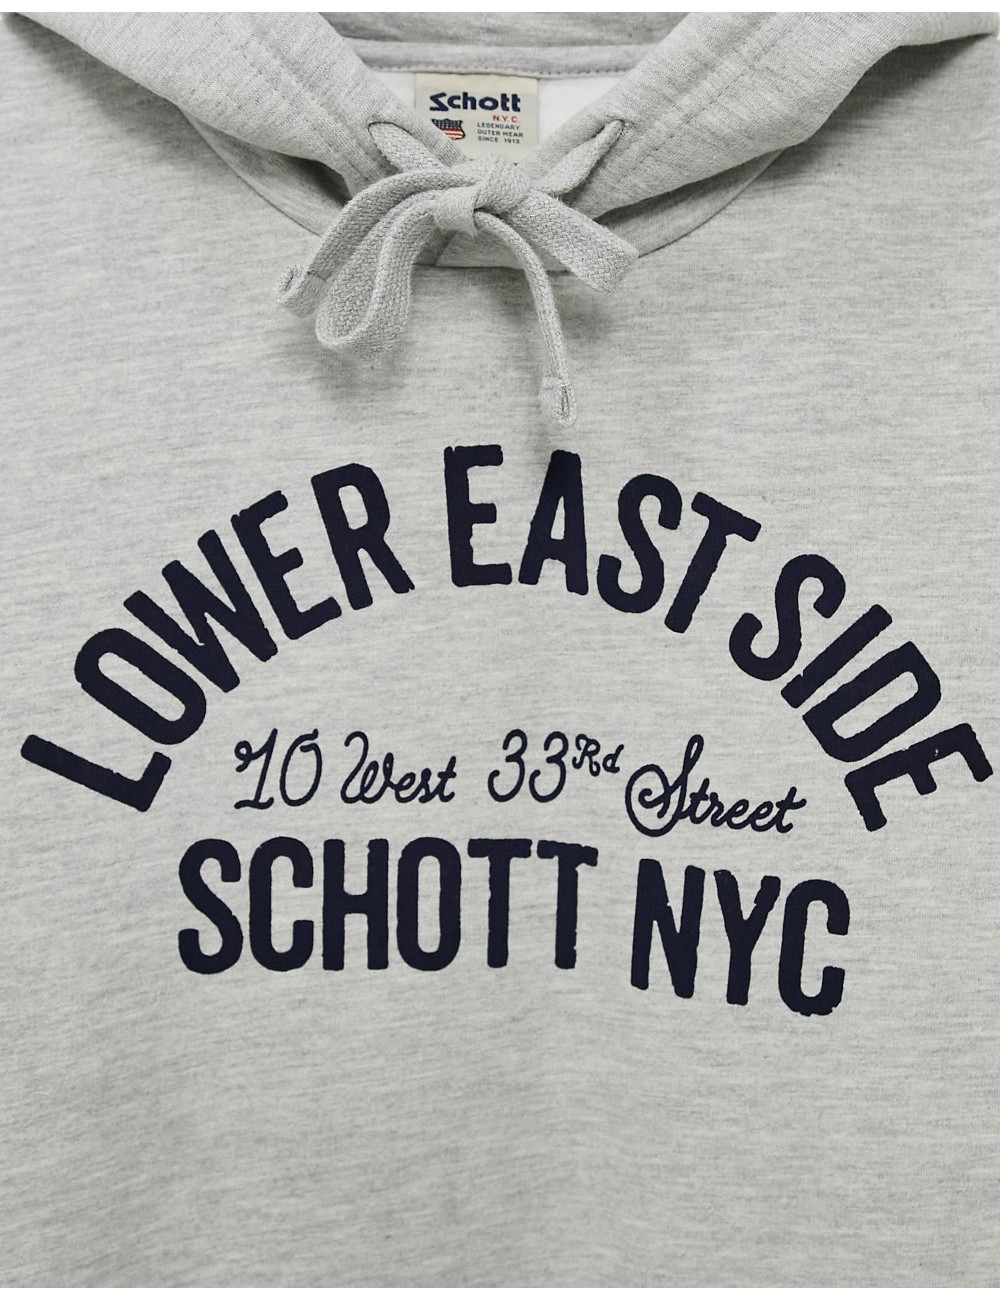 Schott hoodie with NYC...